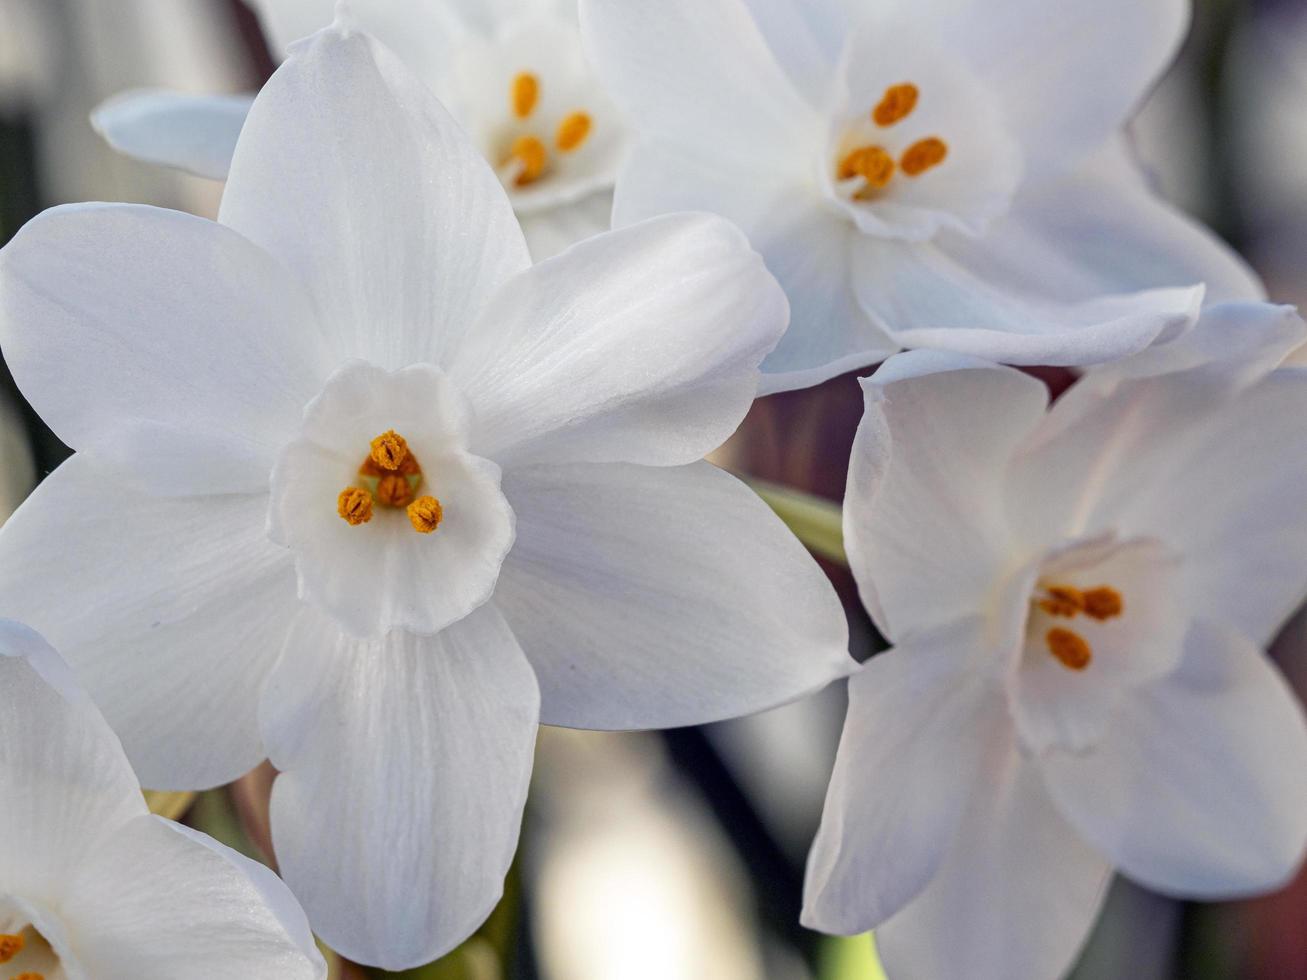 joli papier de narcisse blanc fleurs blanches photo